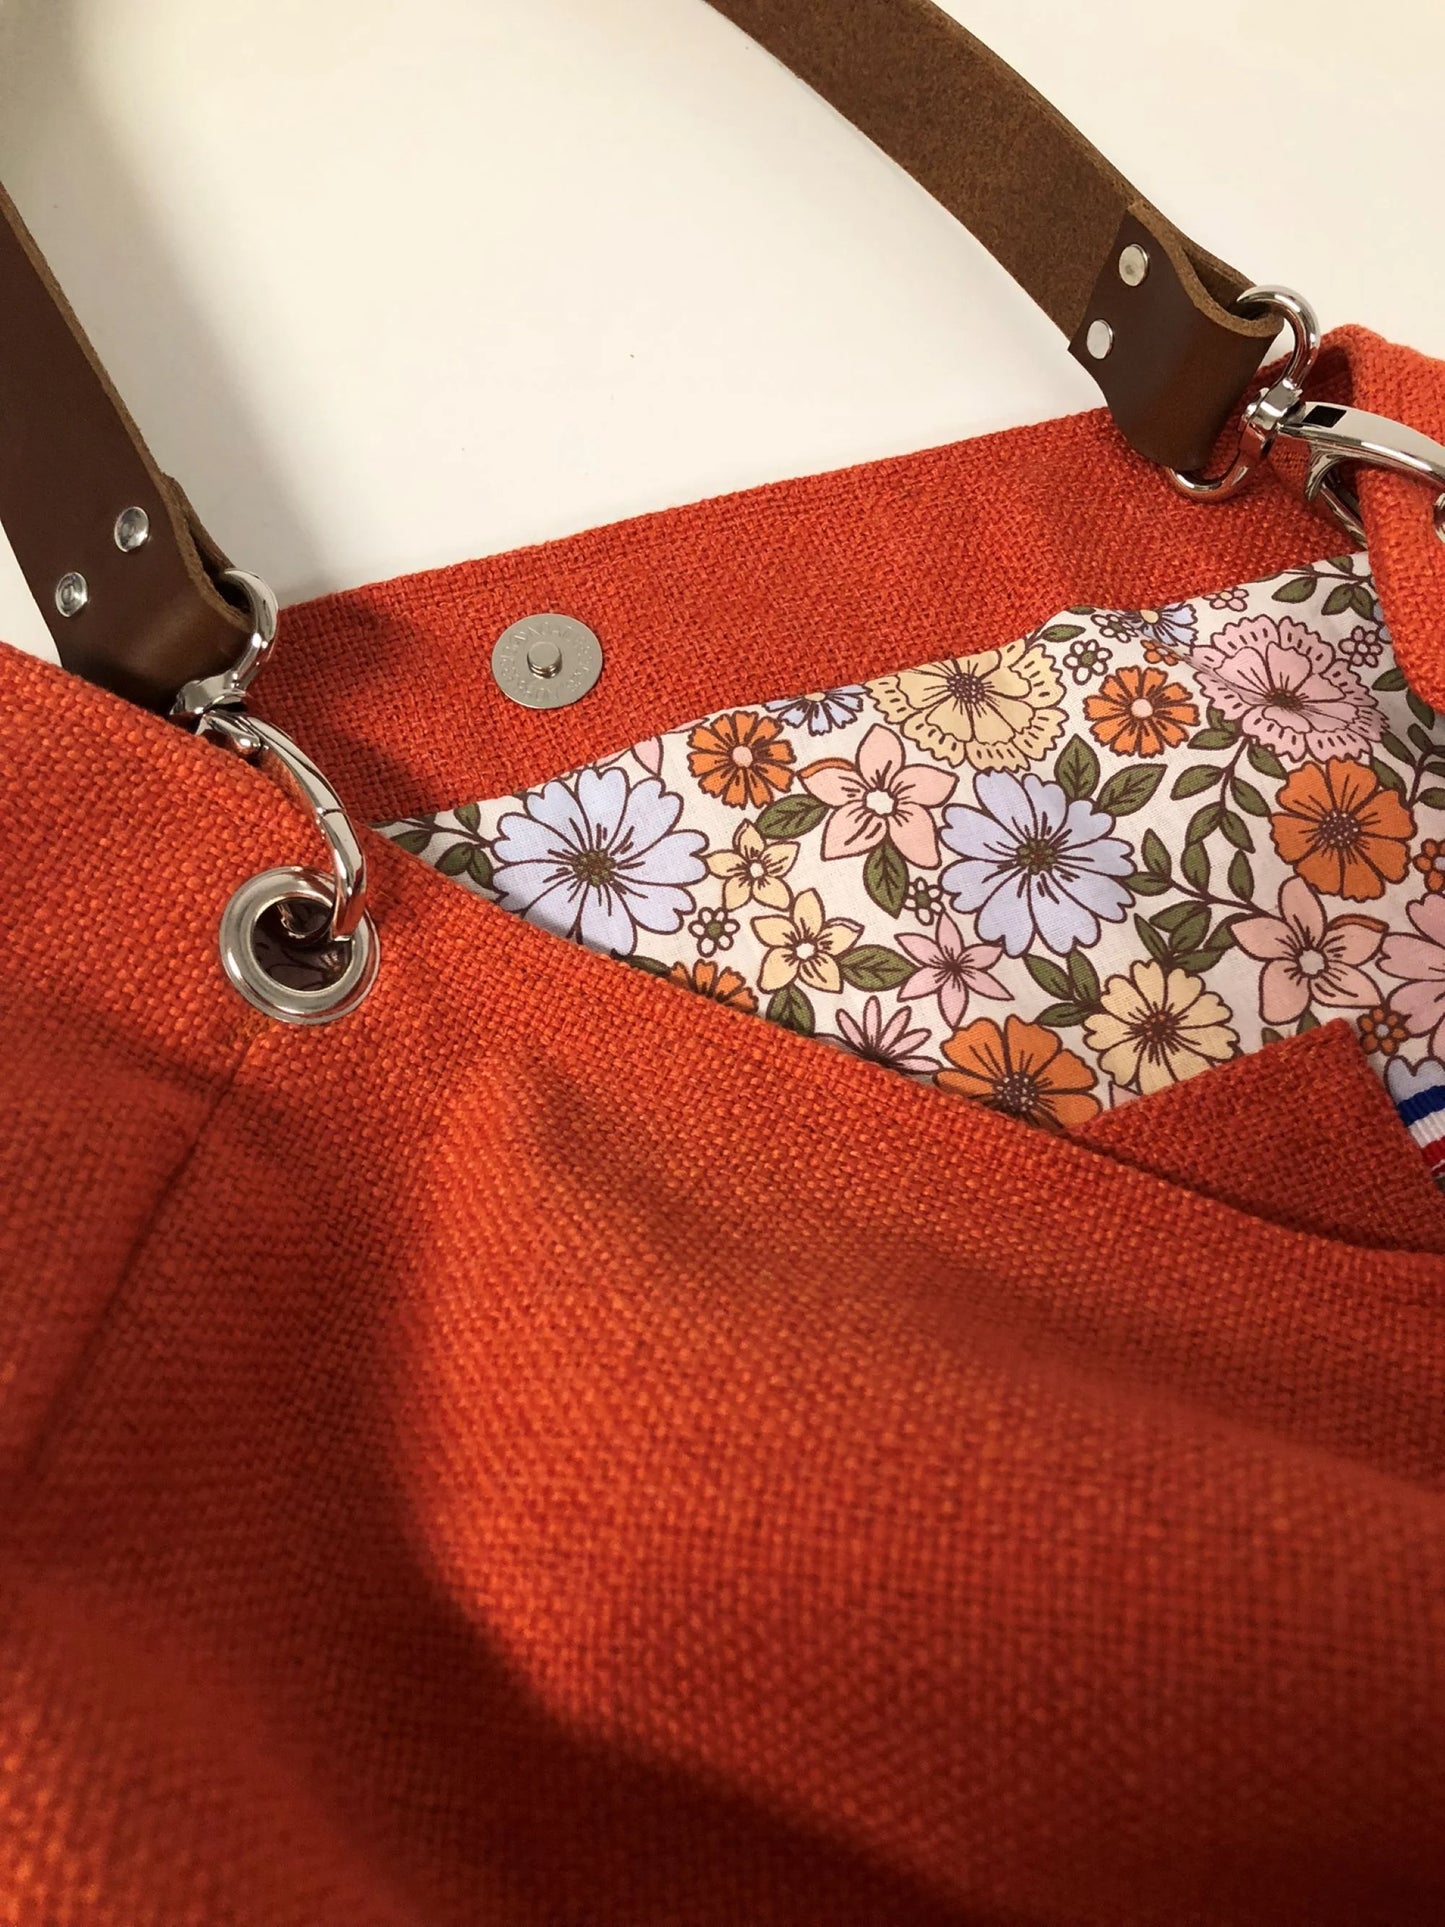 La poche plaquée intérieure du sac Hobo en lin orange et son anse en cuir marron.